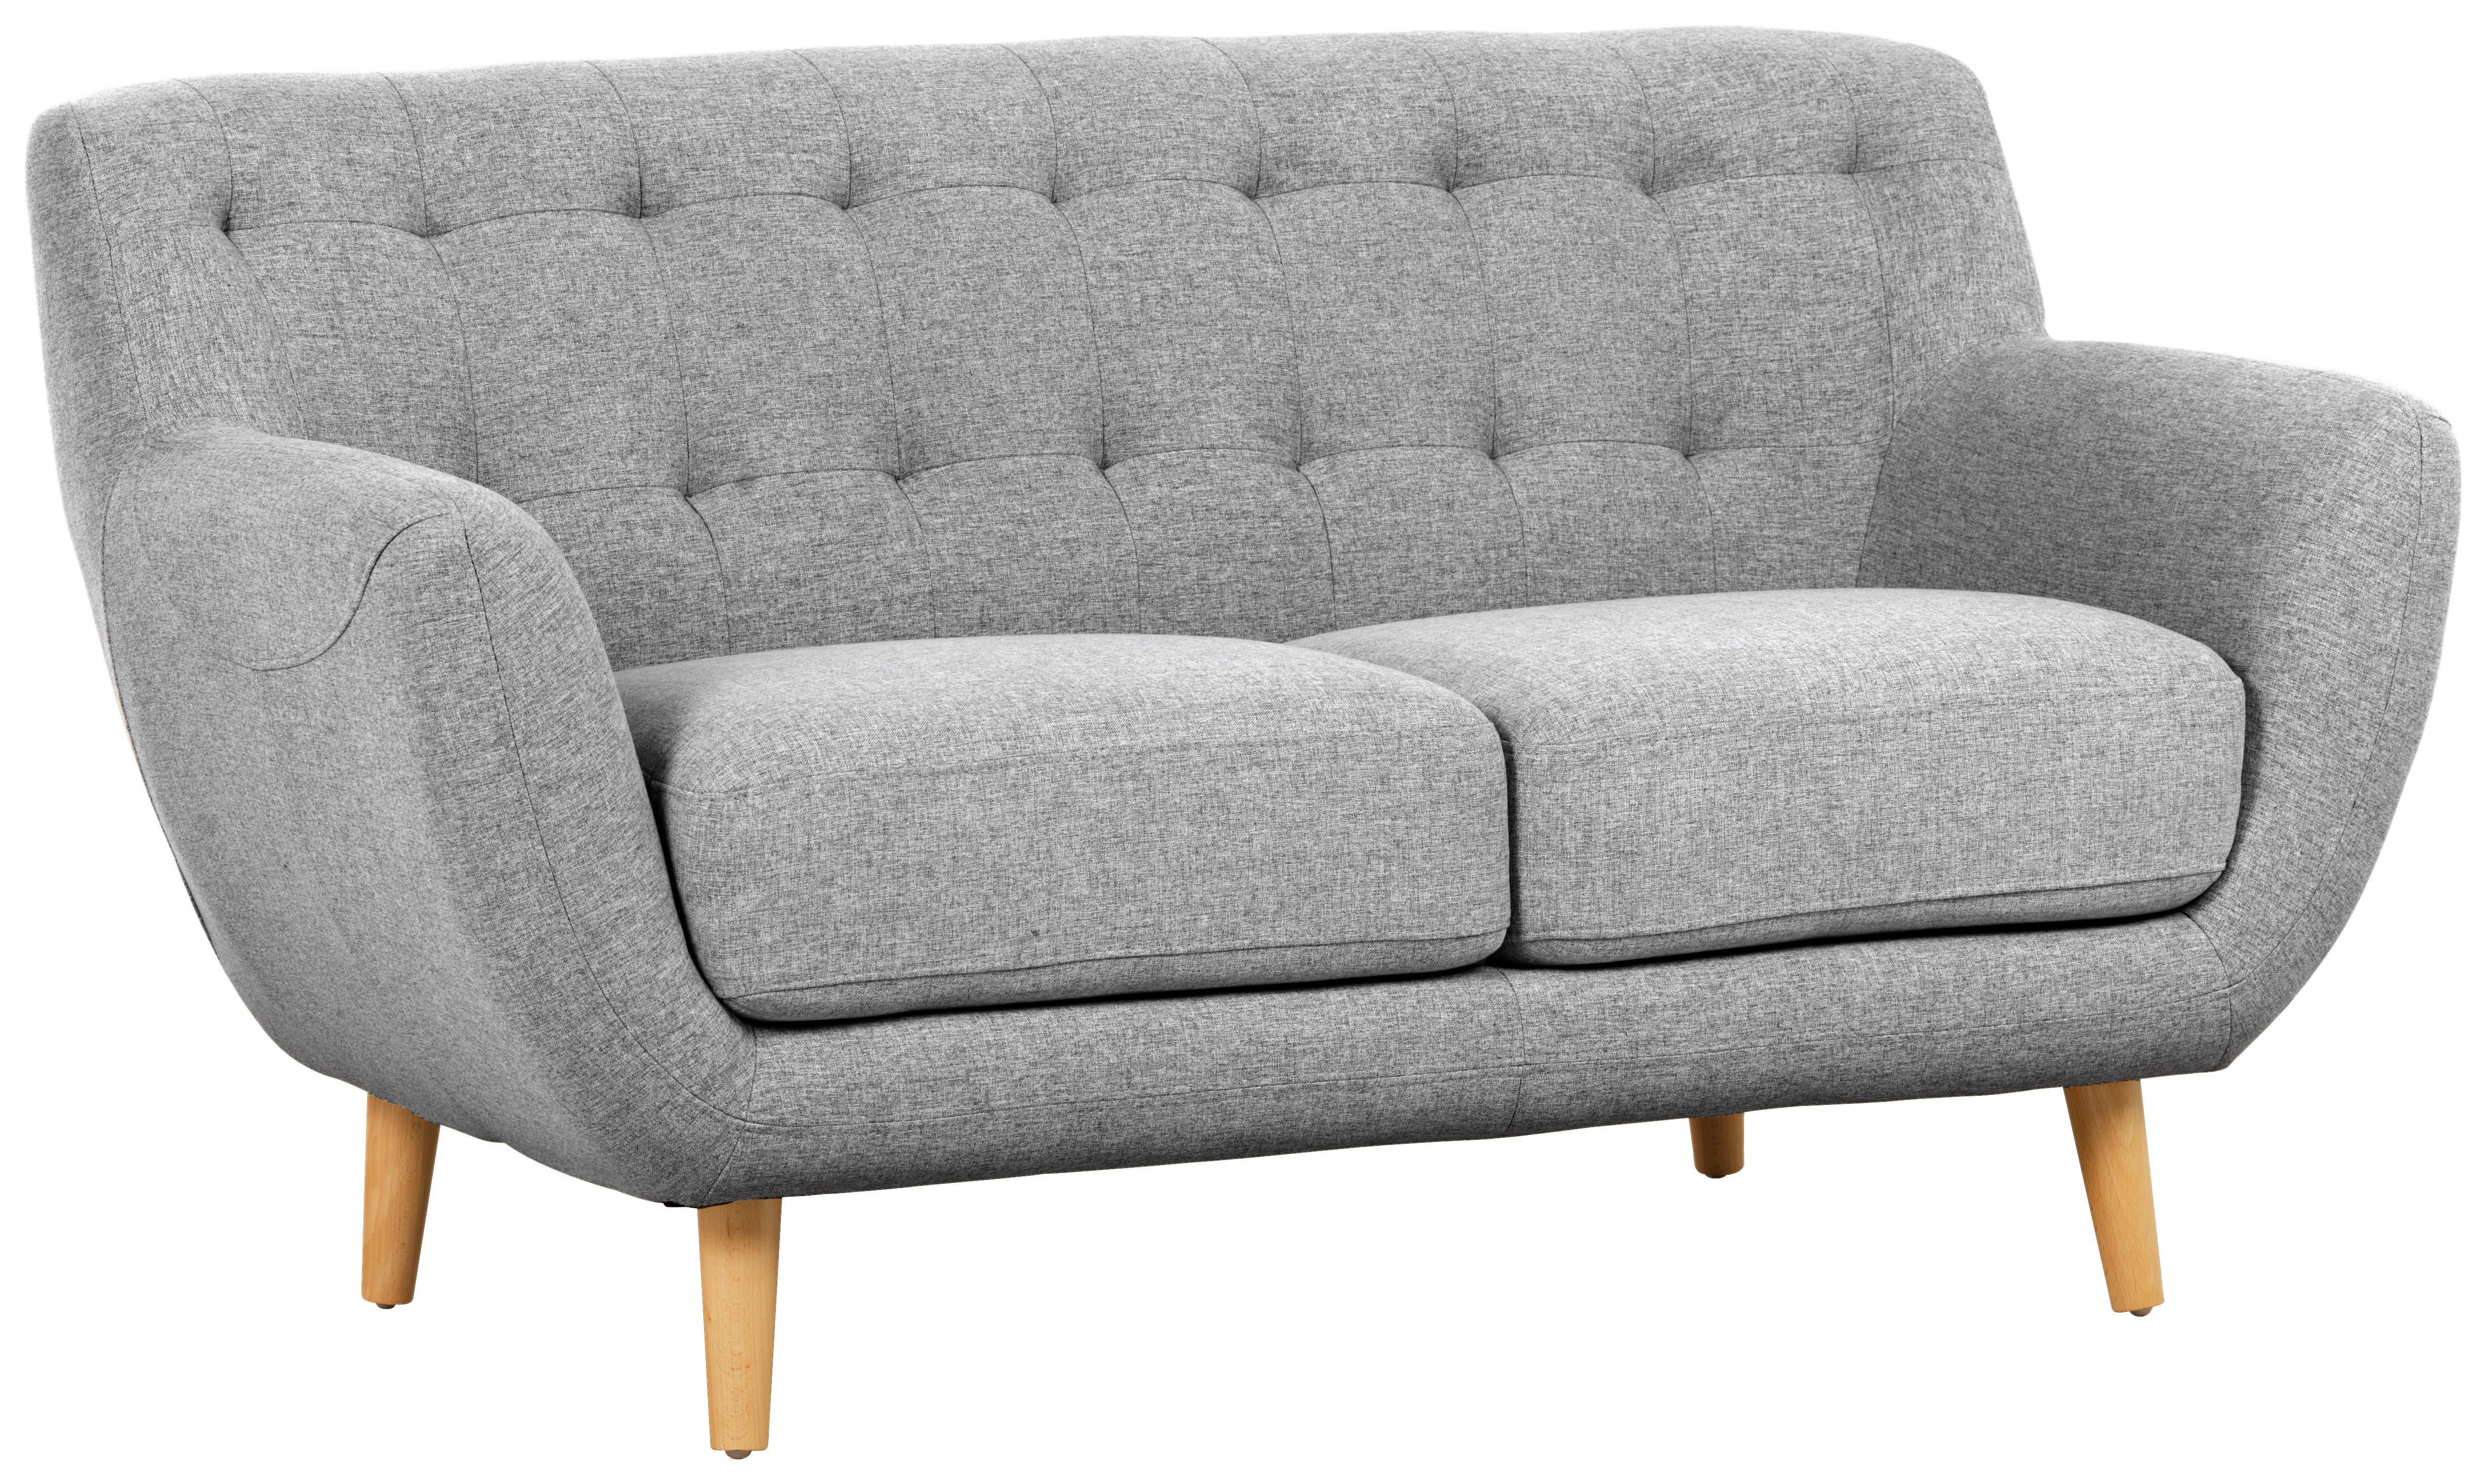 Set canapele in textil gri, gri deschis  - gri deschis/culoare natur, Design, lemn/textil (180/84/82cm) - Niels Andersson